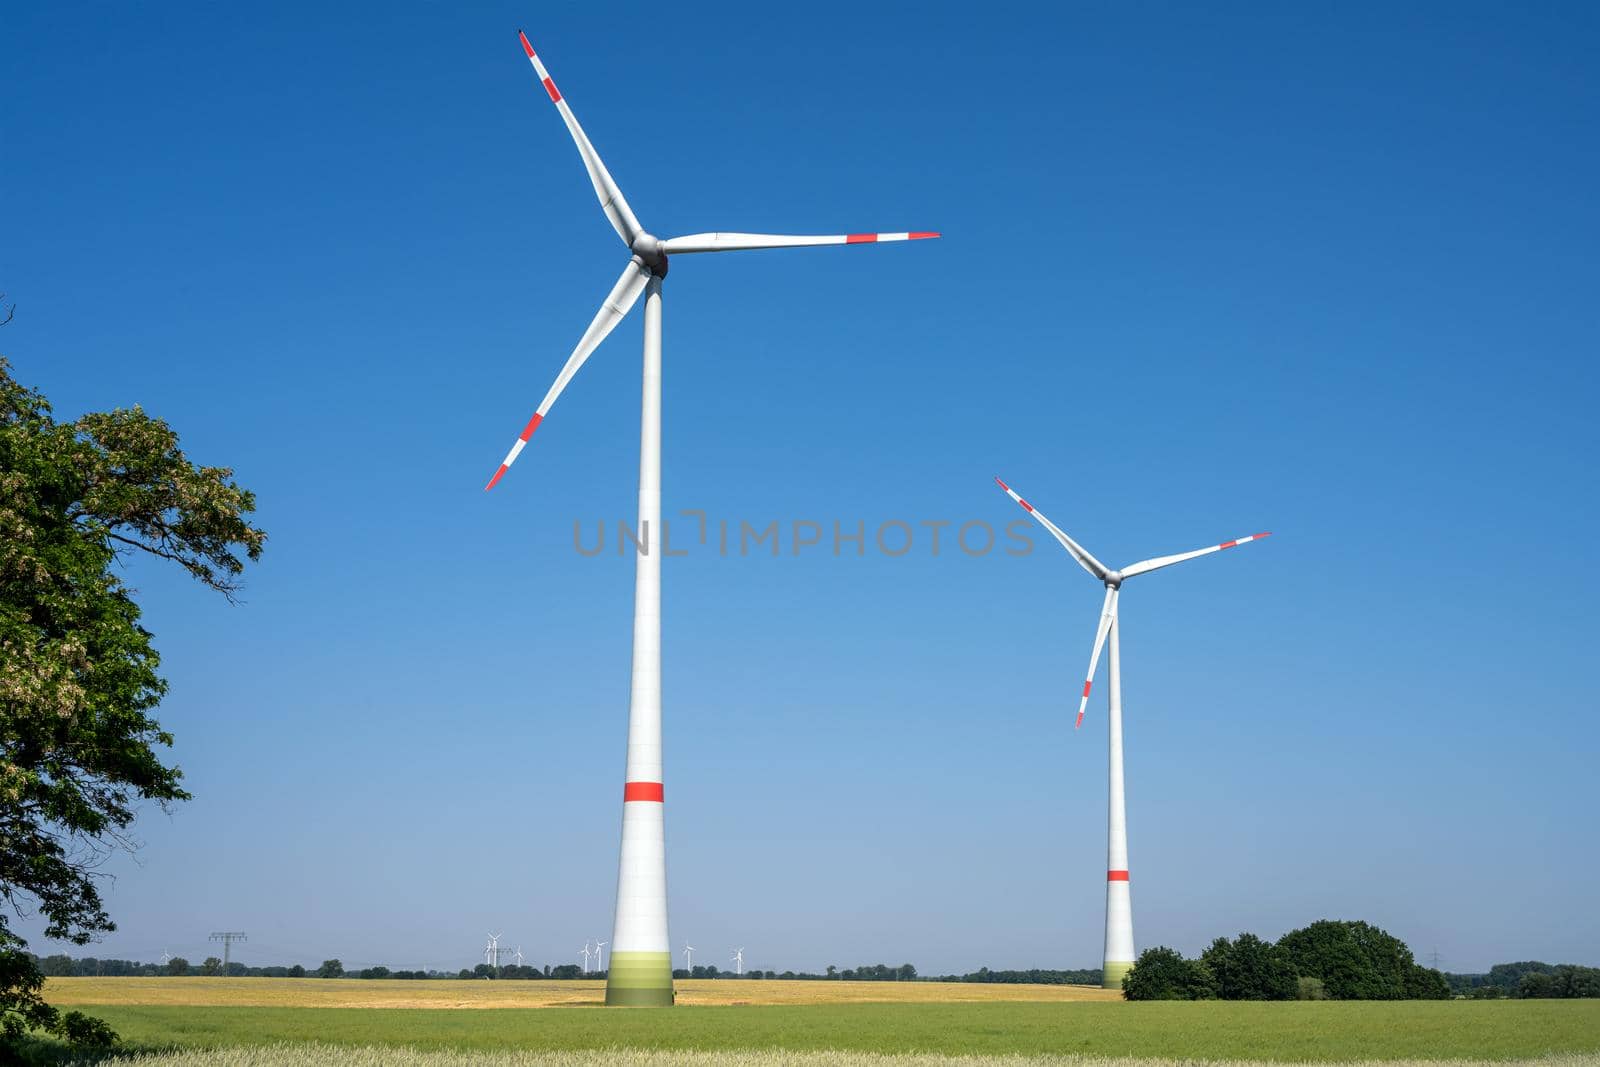 Wind turbines in a rural landscape seen in Germany